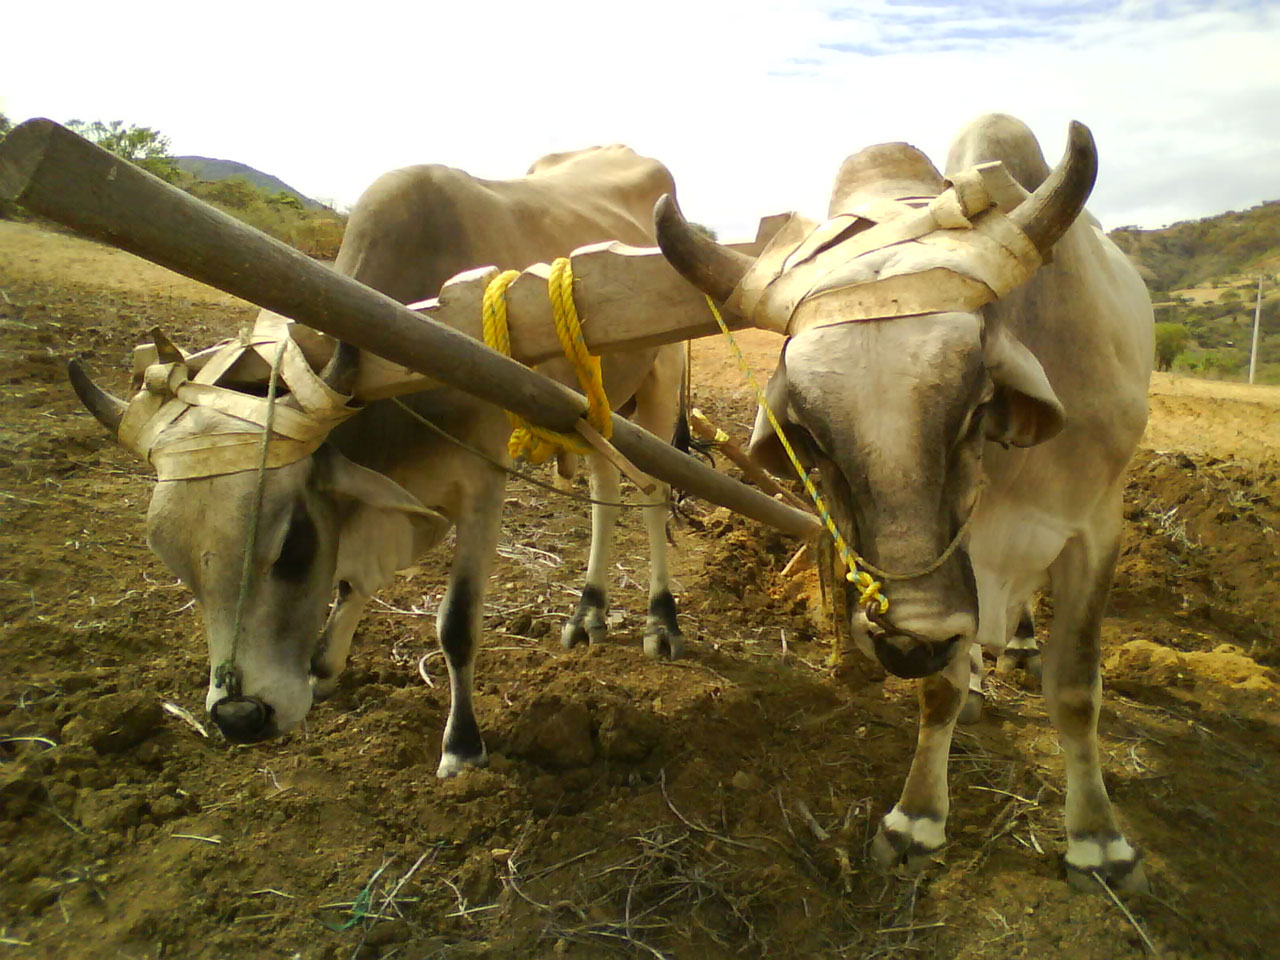 yoke to plow land by two zebu bulls